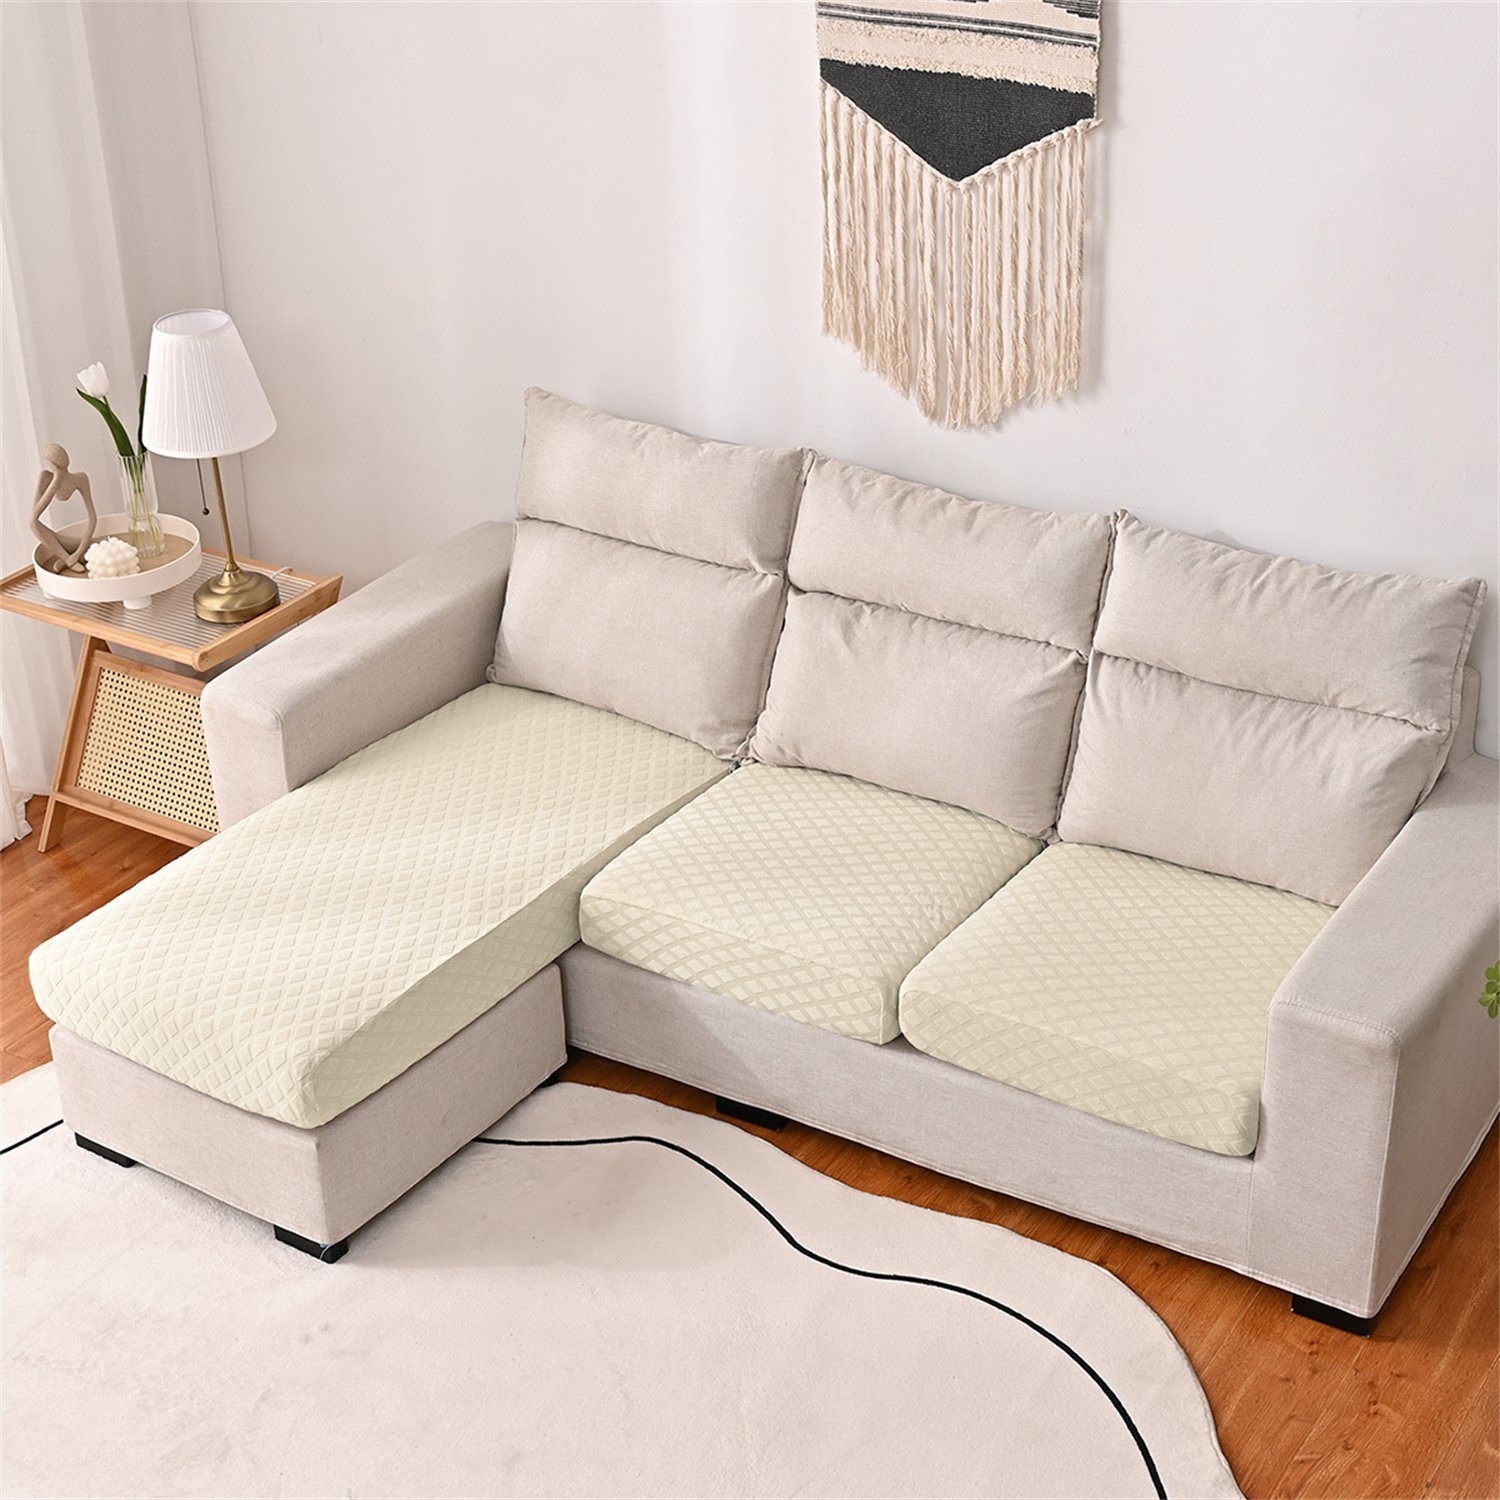 HOMEIDEAS, 3DMuster Sofa-Sitzbezug wasserfest elastischer Beige Sofahusse, mit